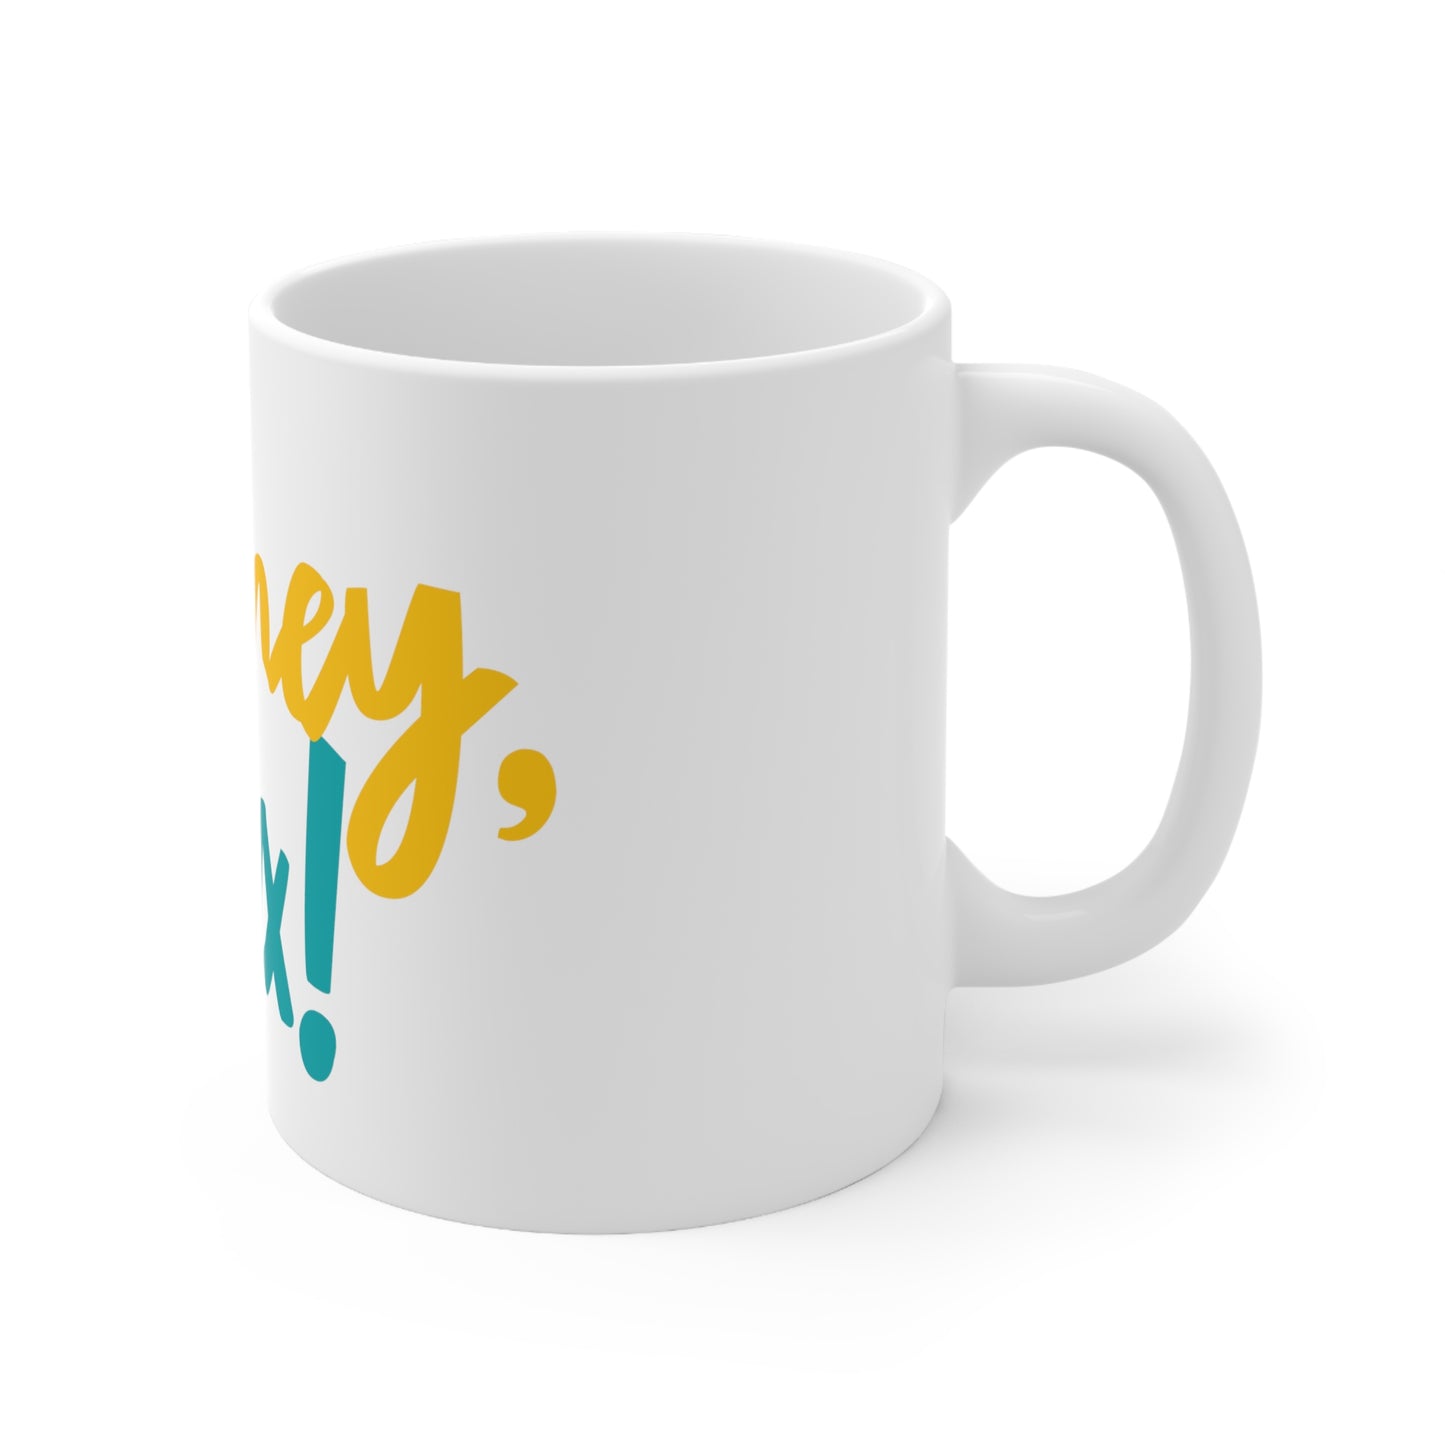 Say hey, Jax! Ceramic Mug 11oz